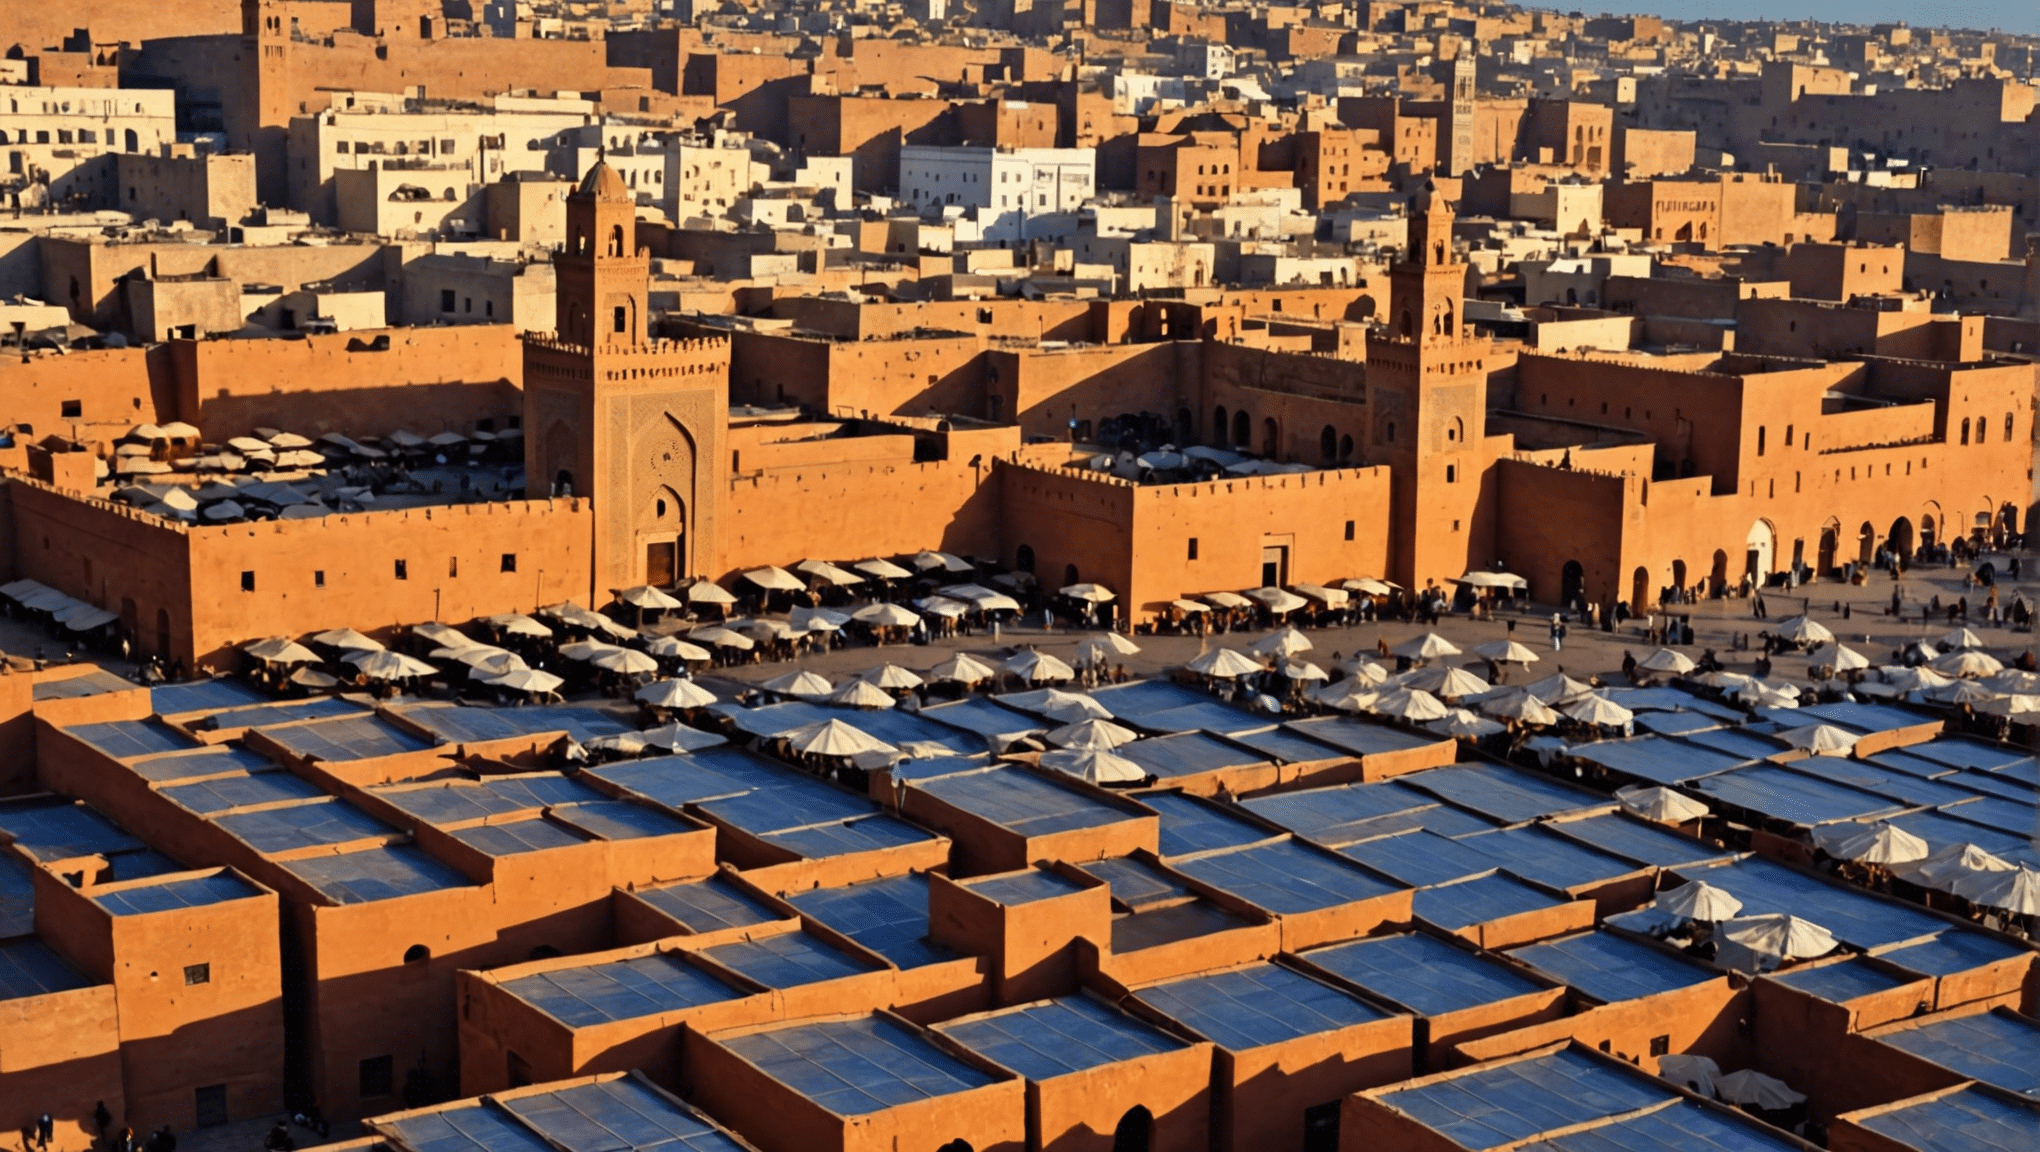 découvrez si le Maroc connaît des températures chaudes en janvier. Planifiez bien votre voyage avec ces informations essentielles sur le climat au Maroc au mois de janvier.